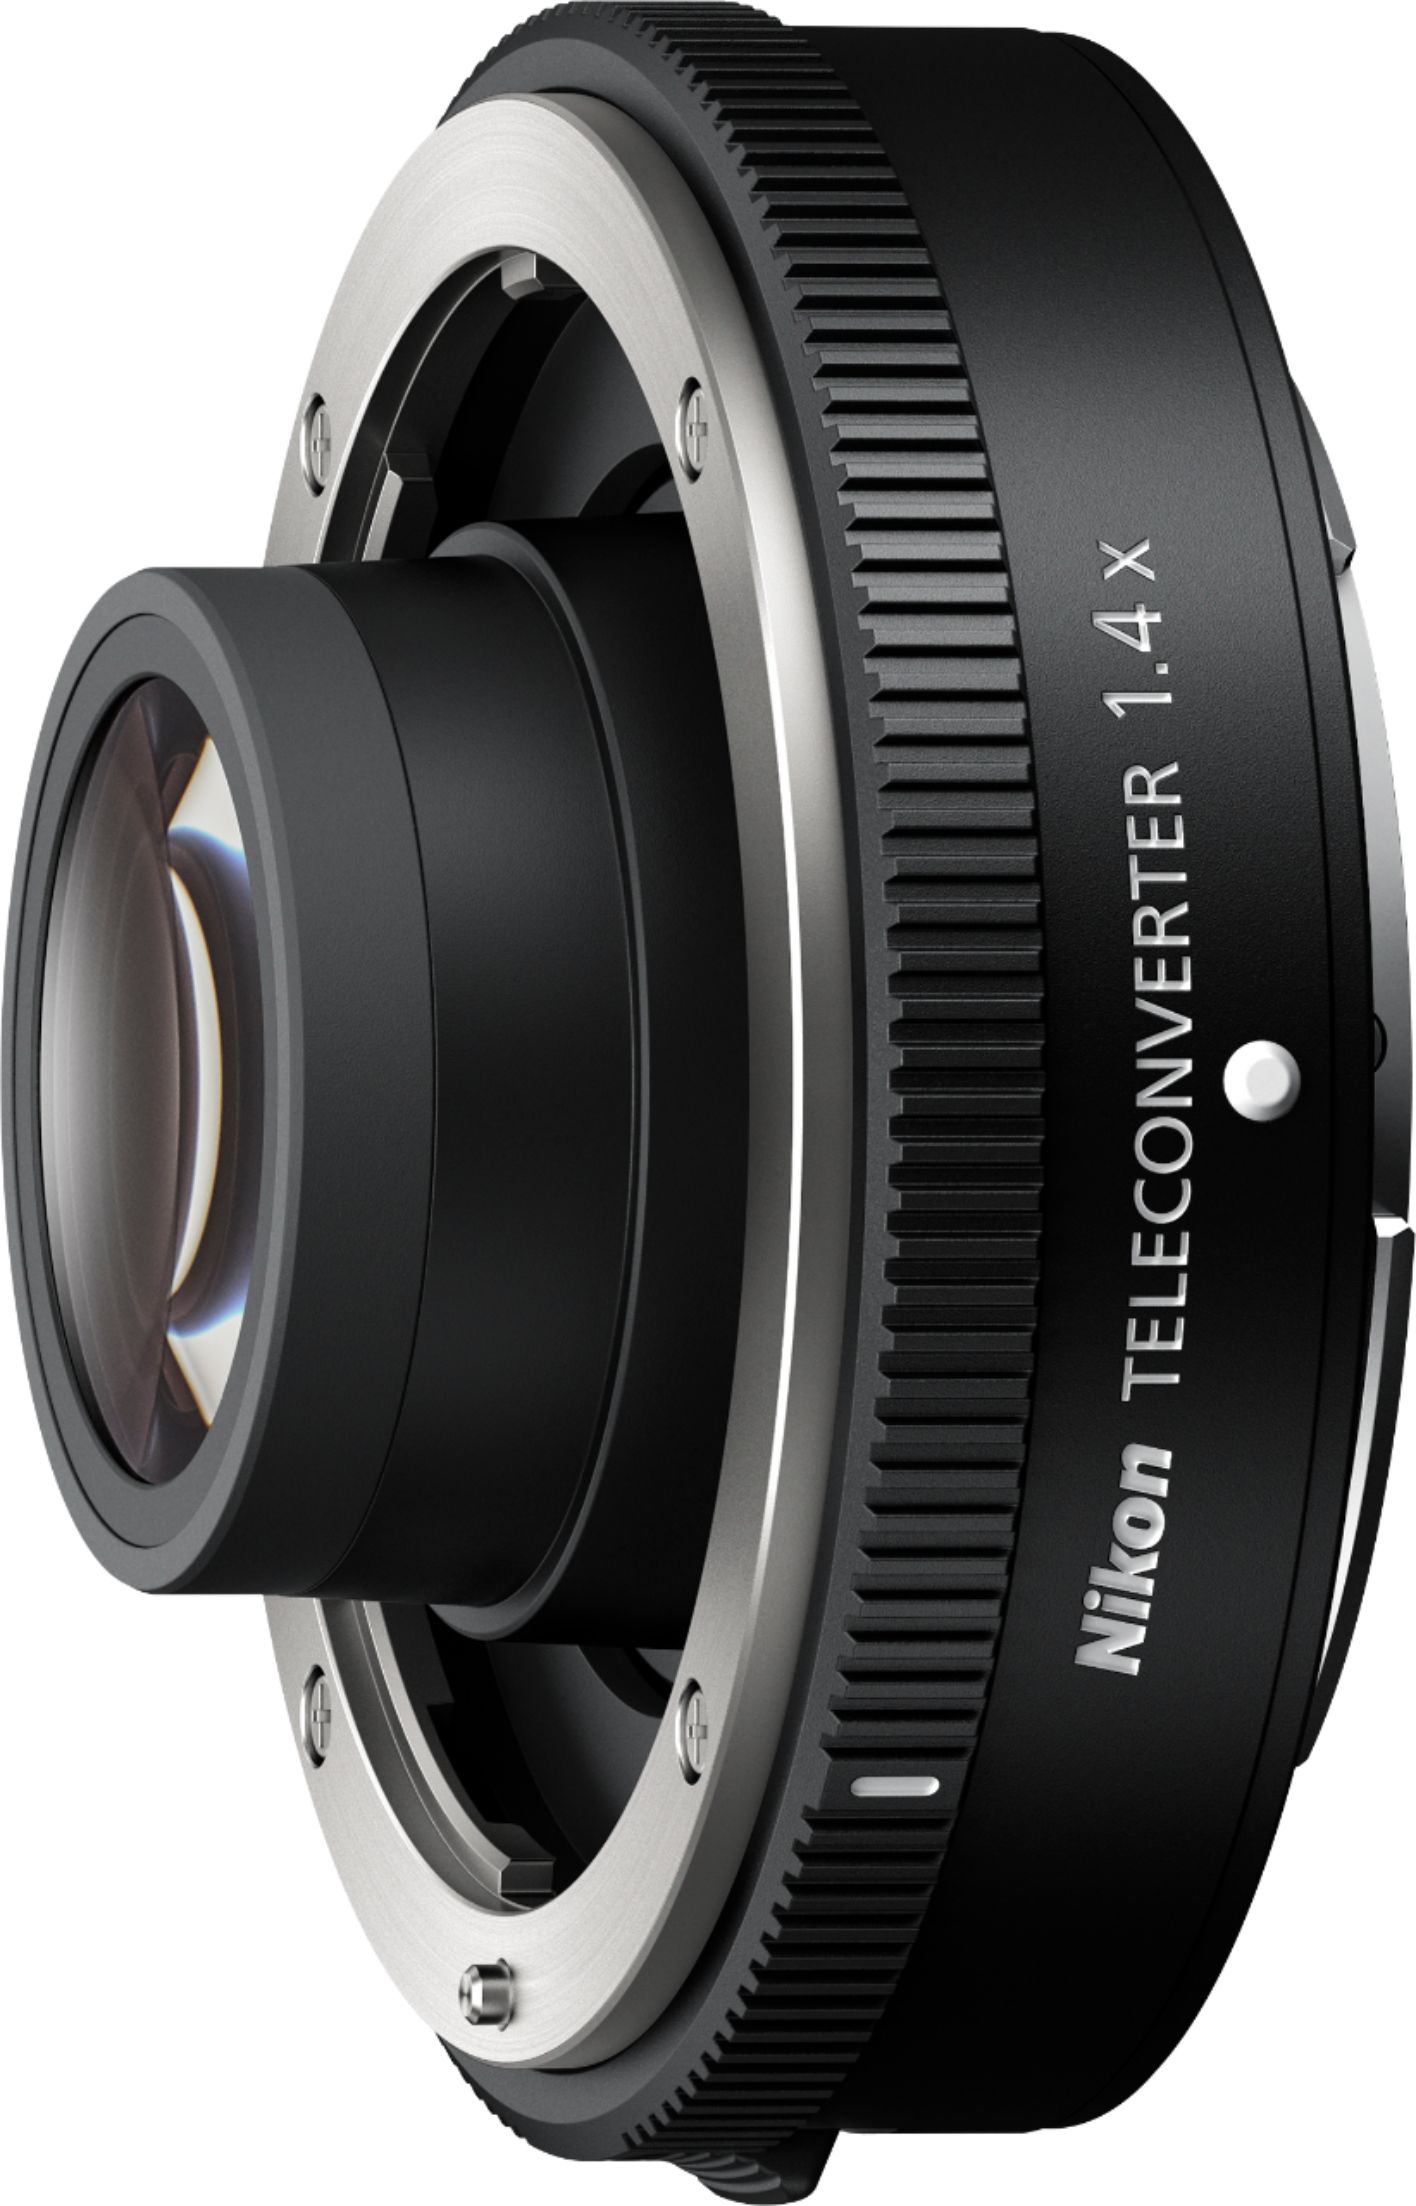 Angle View: Nikon - Z TELECONVERTER TC-1.4x - Black